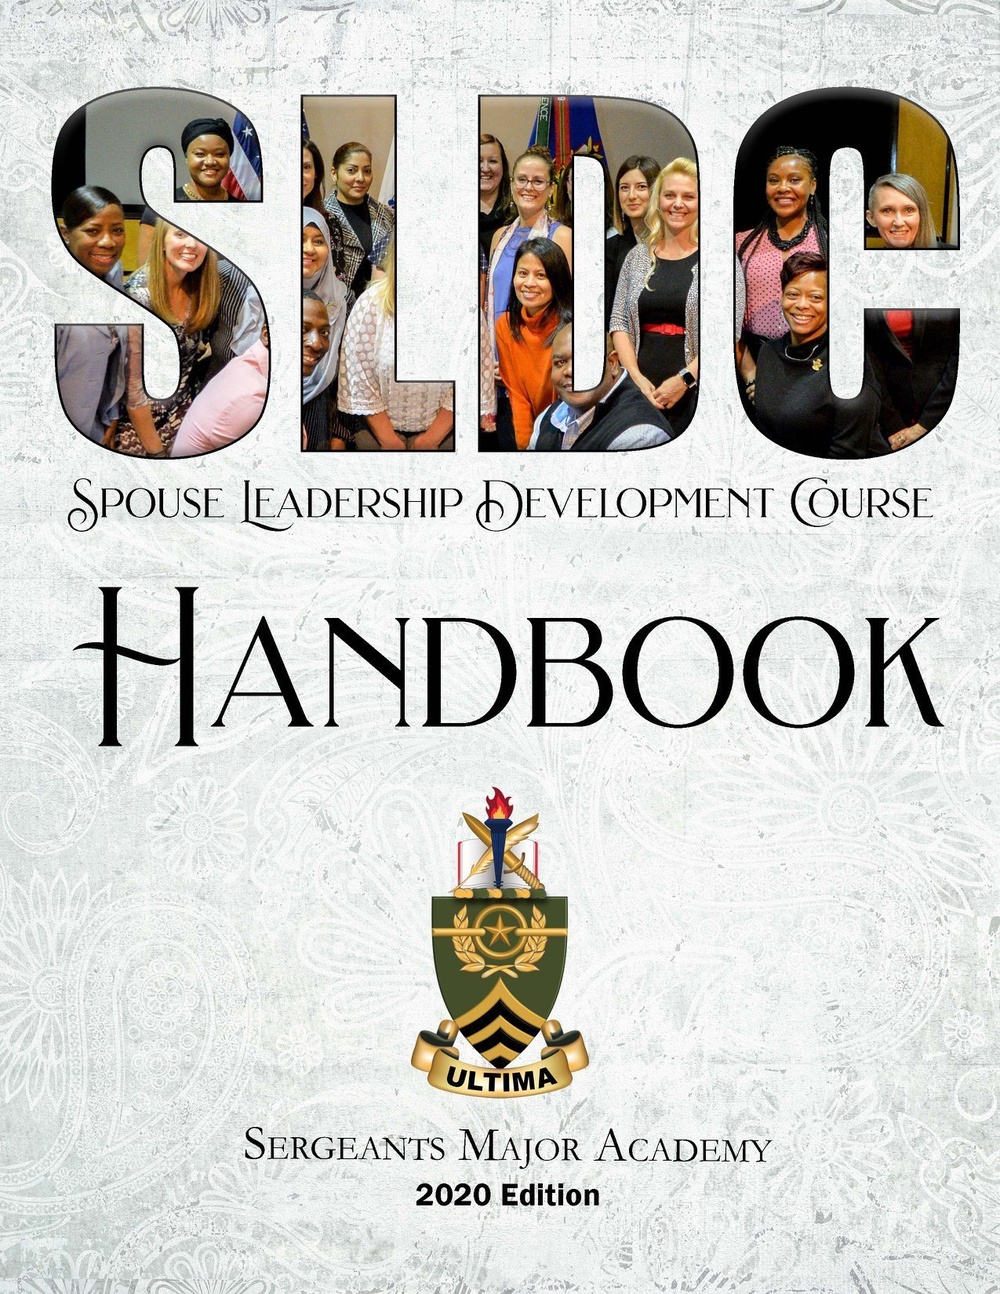 SLDC Handbook released